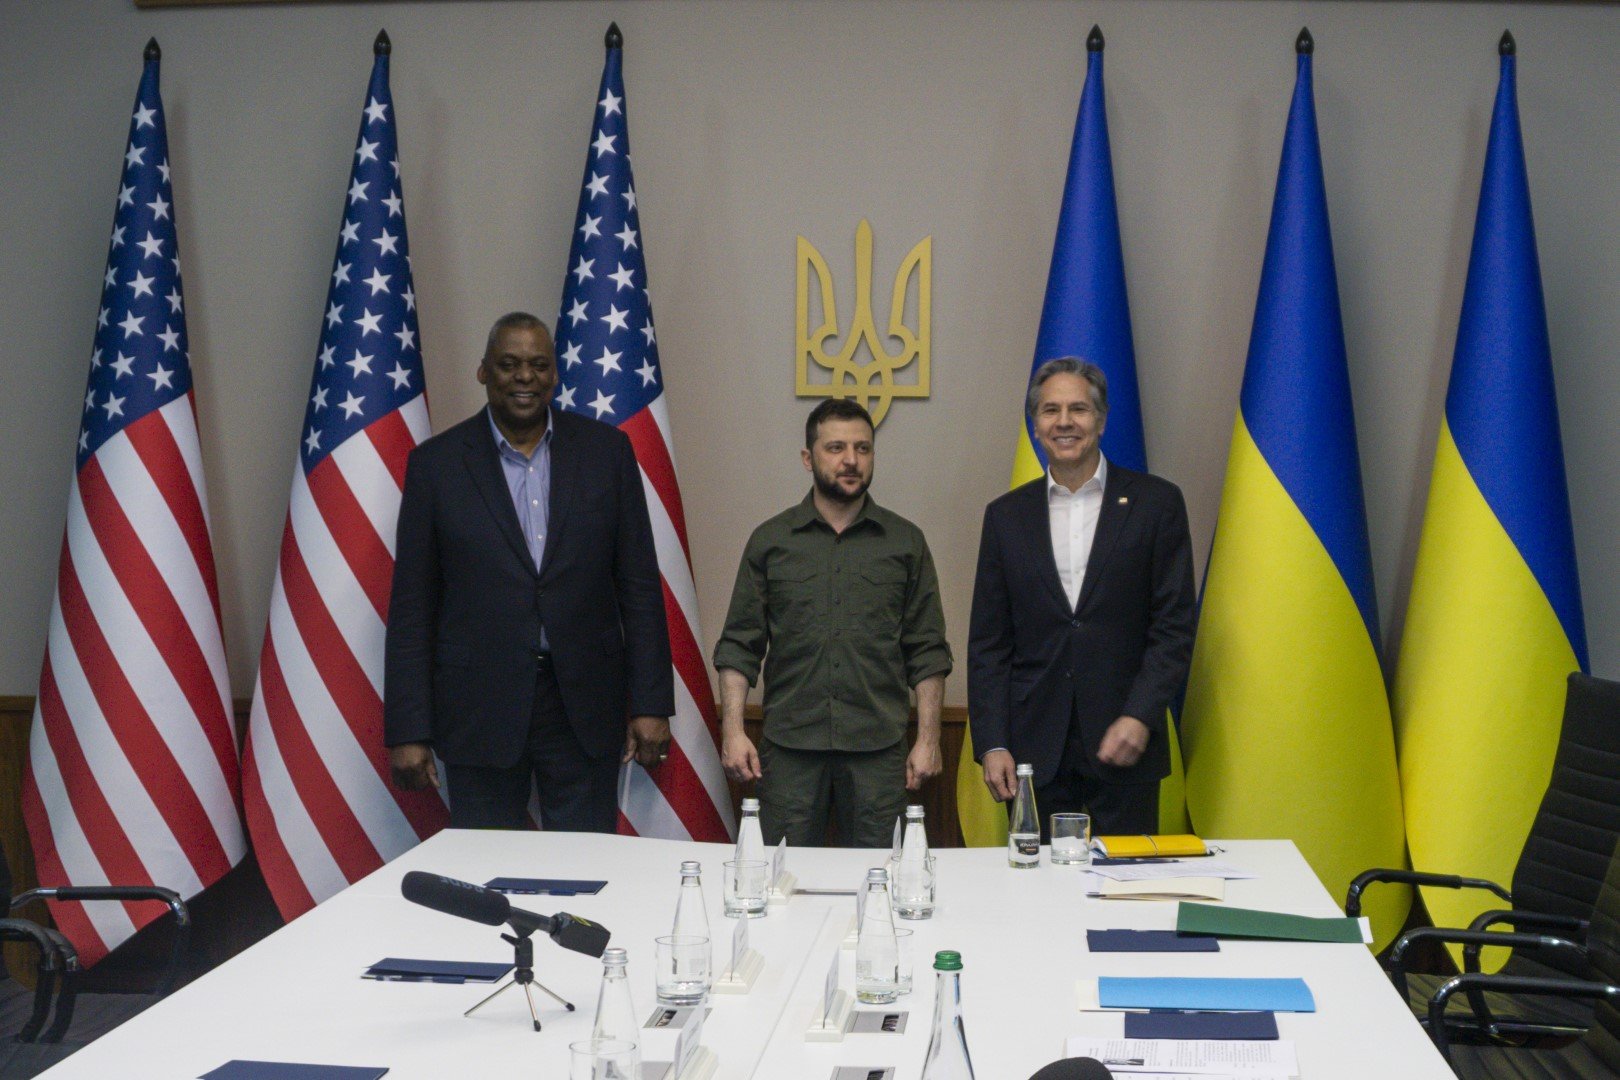 24 април 2022 г. - Mинистърът на отбраната на САЩ Лойд Остин (вляво) и държавният секретар Антони Блинкен (вдясно) на среща в Киев с украинския президент Владимир Зеленски